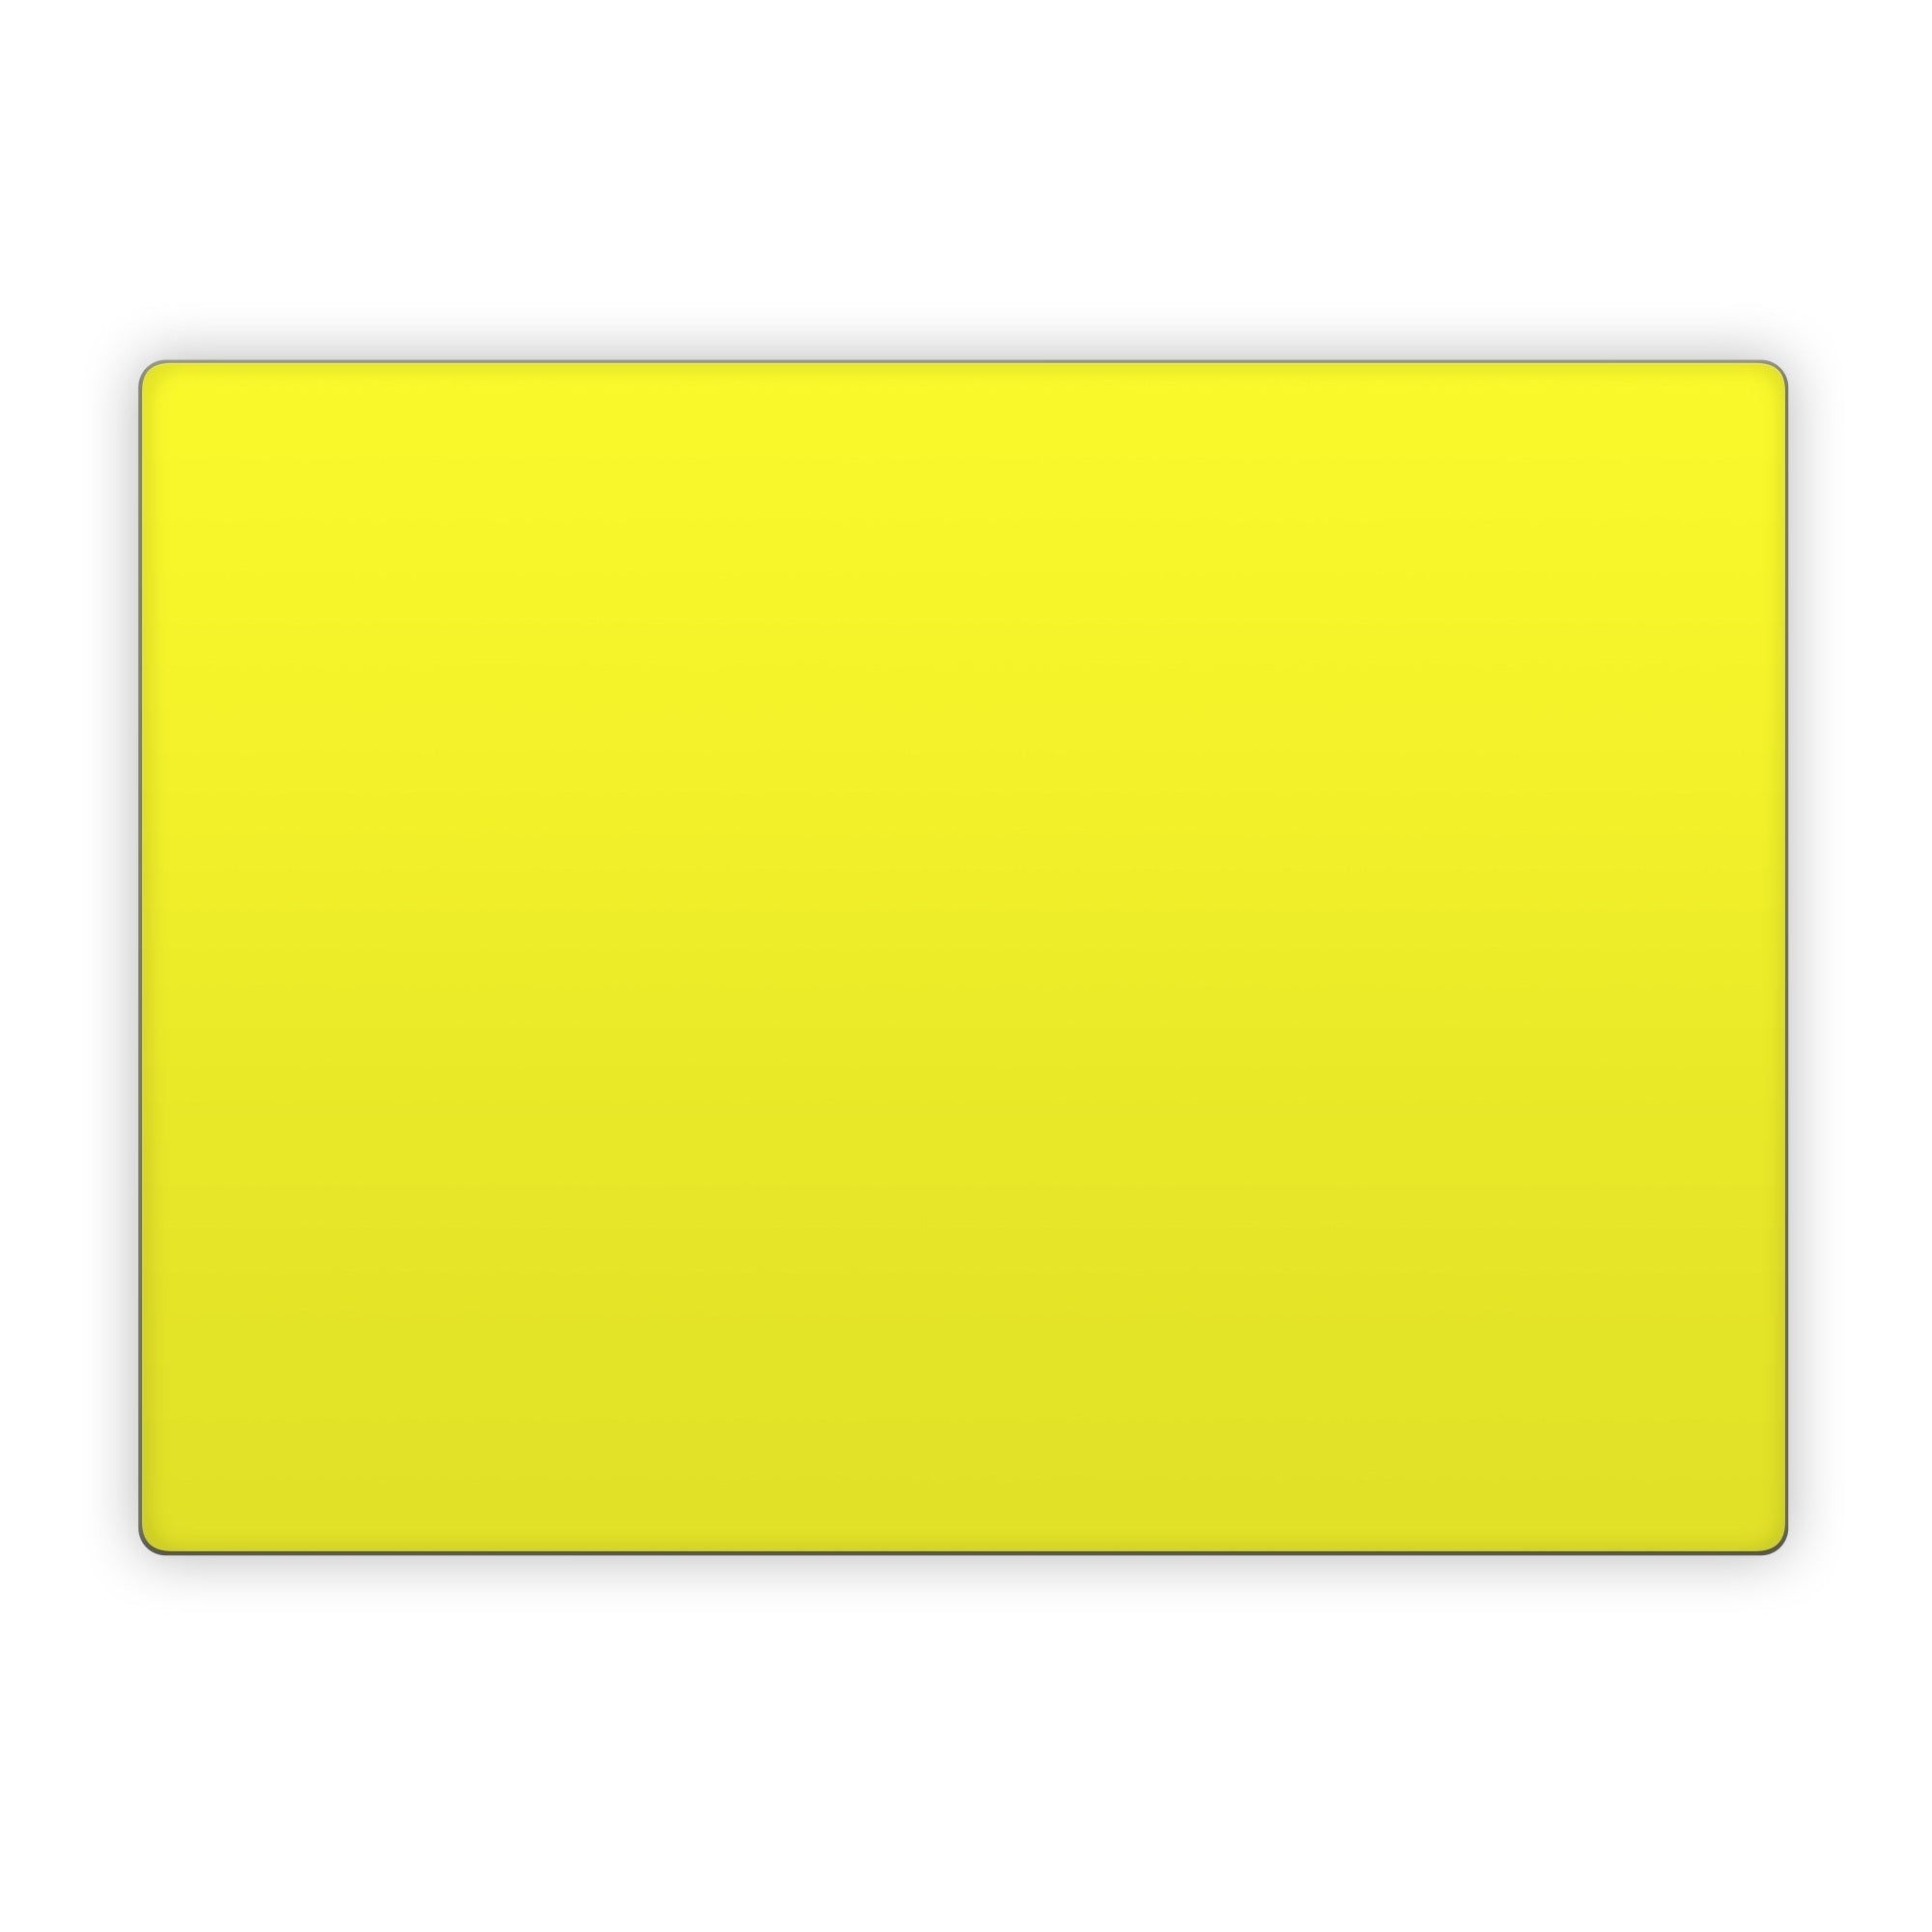 Solid State Lemon - Microsoft Surface Laptop Skin